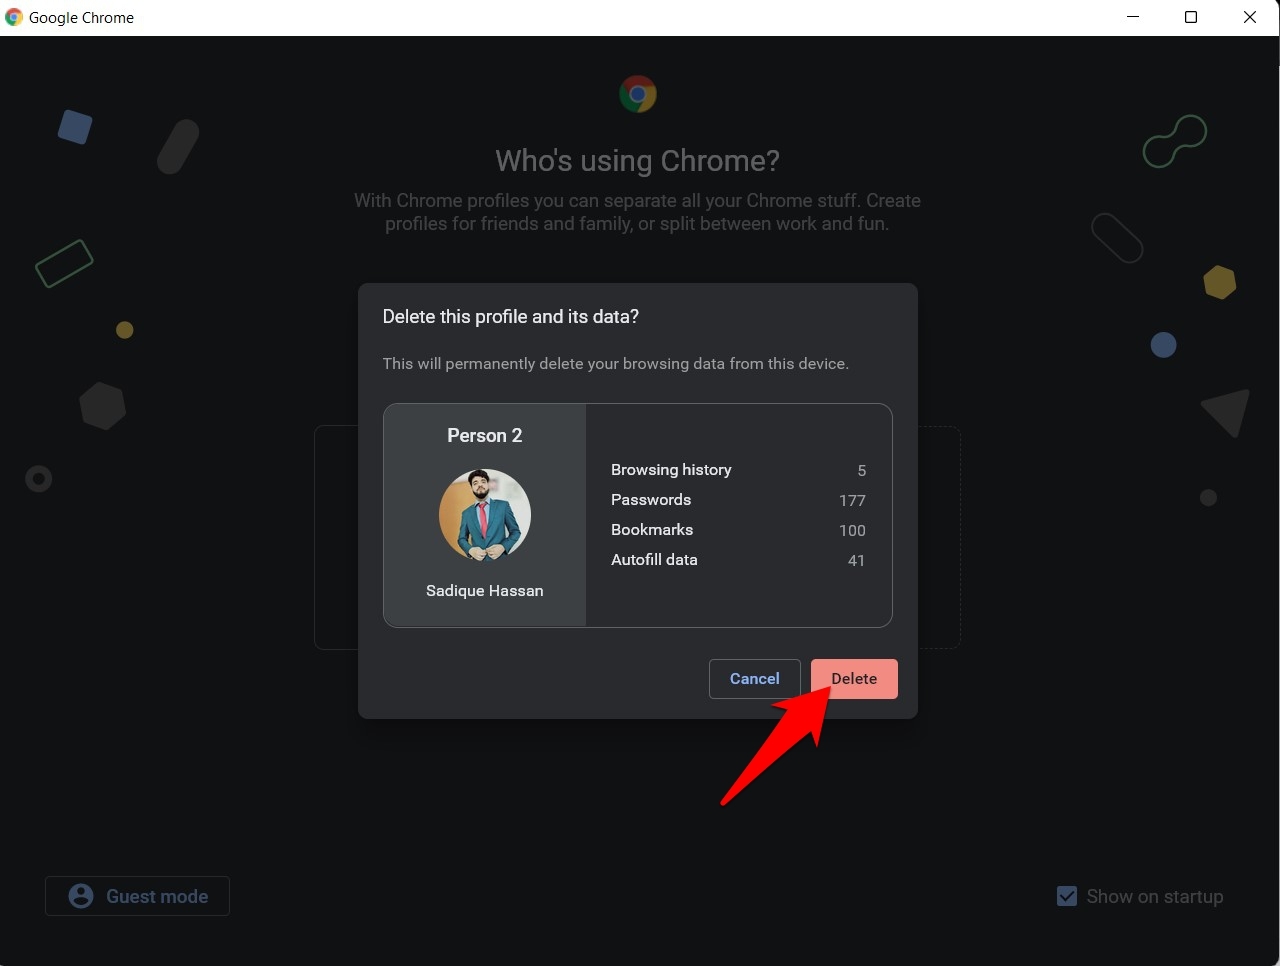 Delete Command to Remove Chrome Profiles